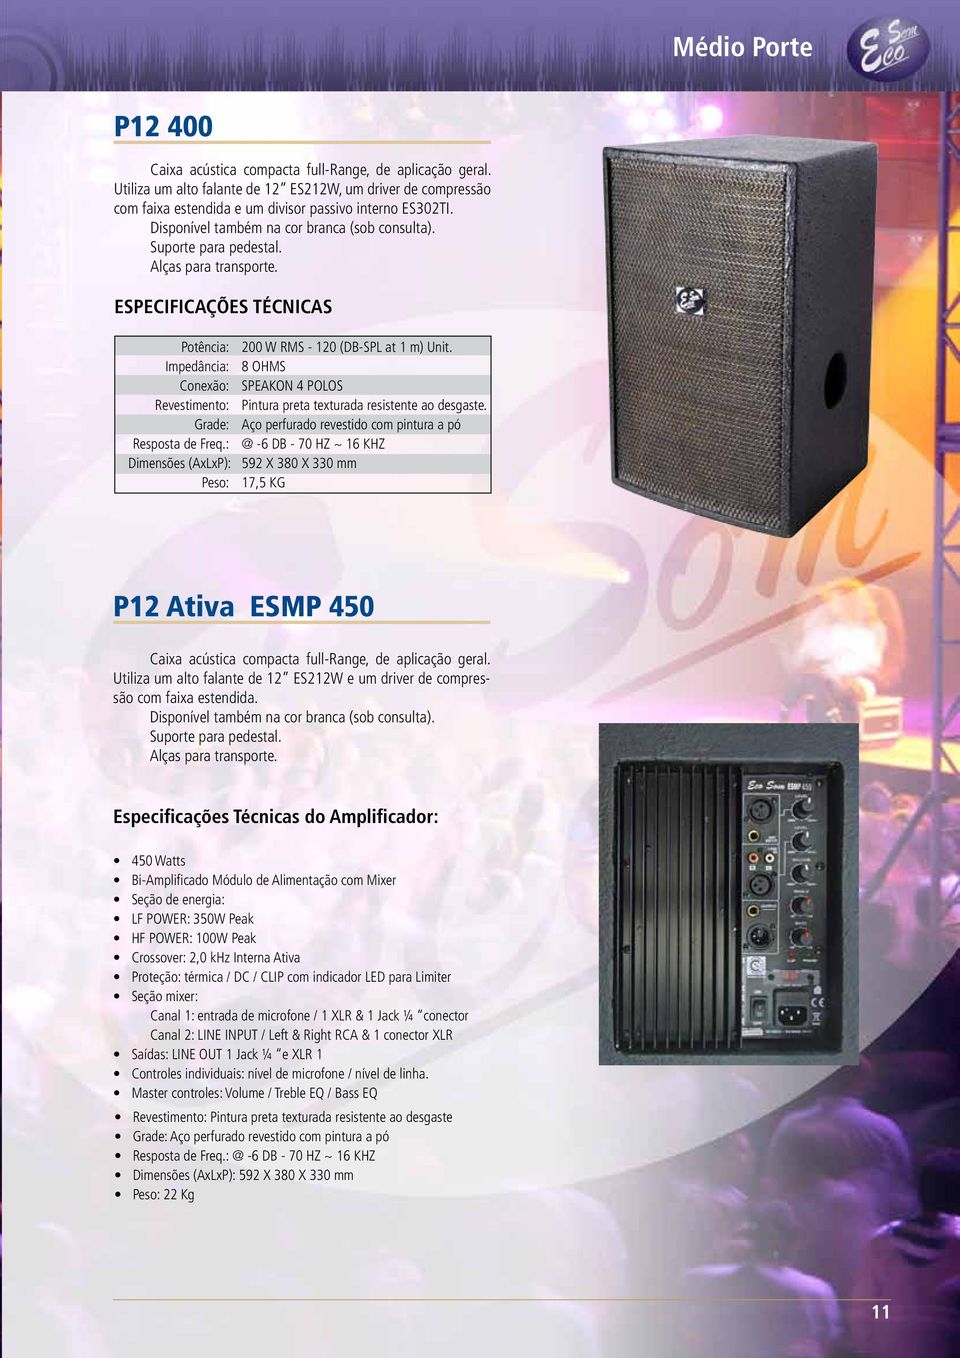 : @ -6 DB - 70 HZ ~ 16 KHZ Dimensões (AxLxP): 592 X 380 X 330 mm Peso: 17,5 KG P12 Ativa ESMP 450 Caixa acústica compacta full-range, de aplicação geral.